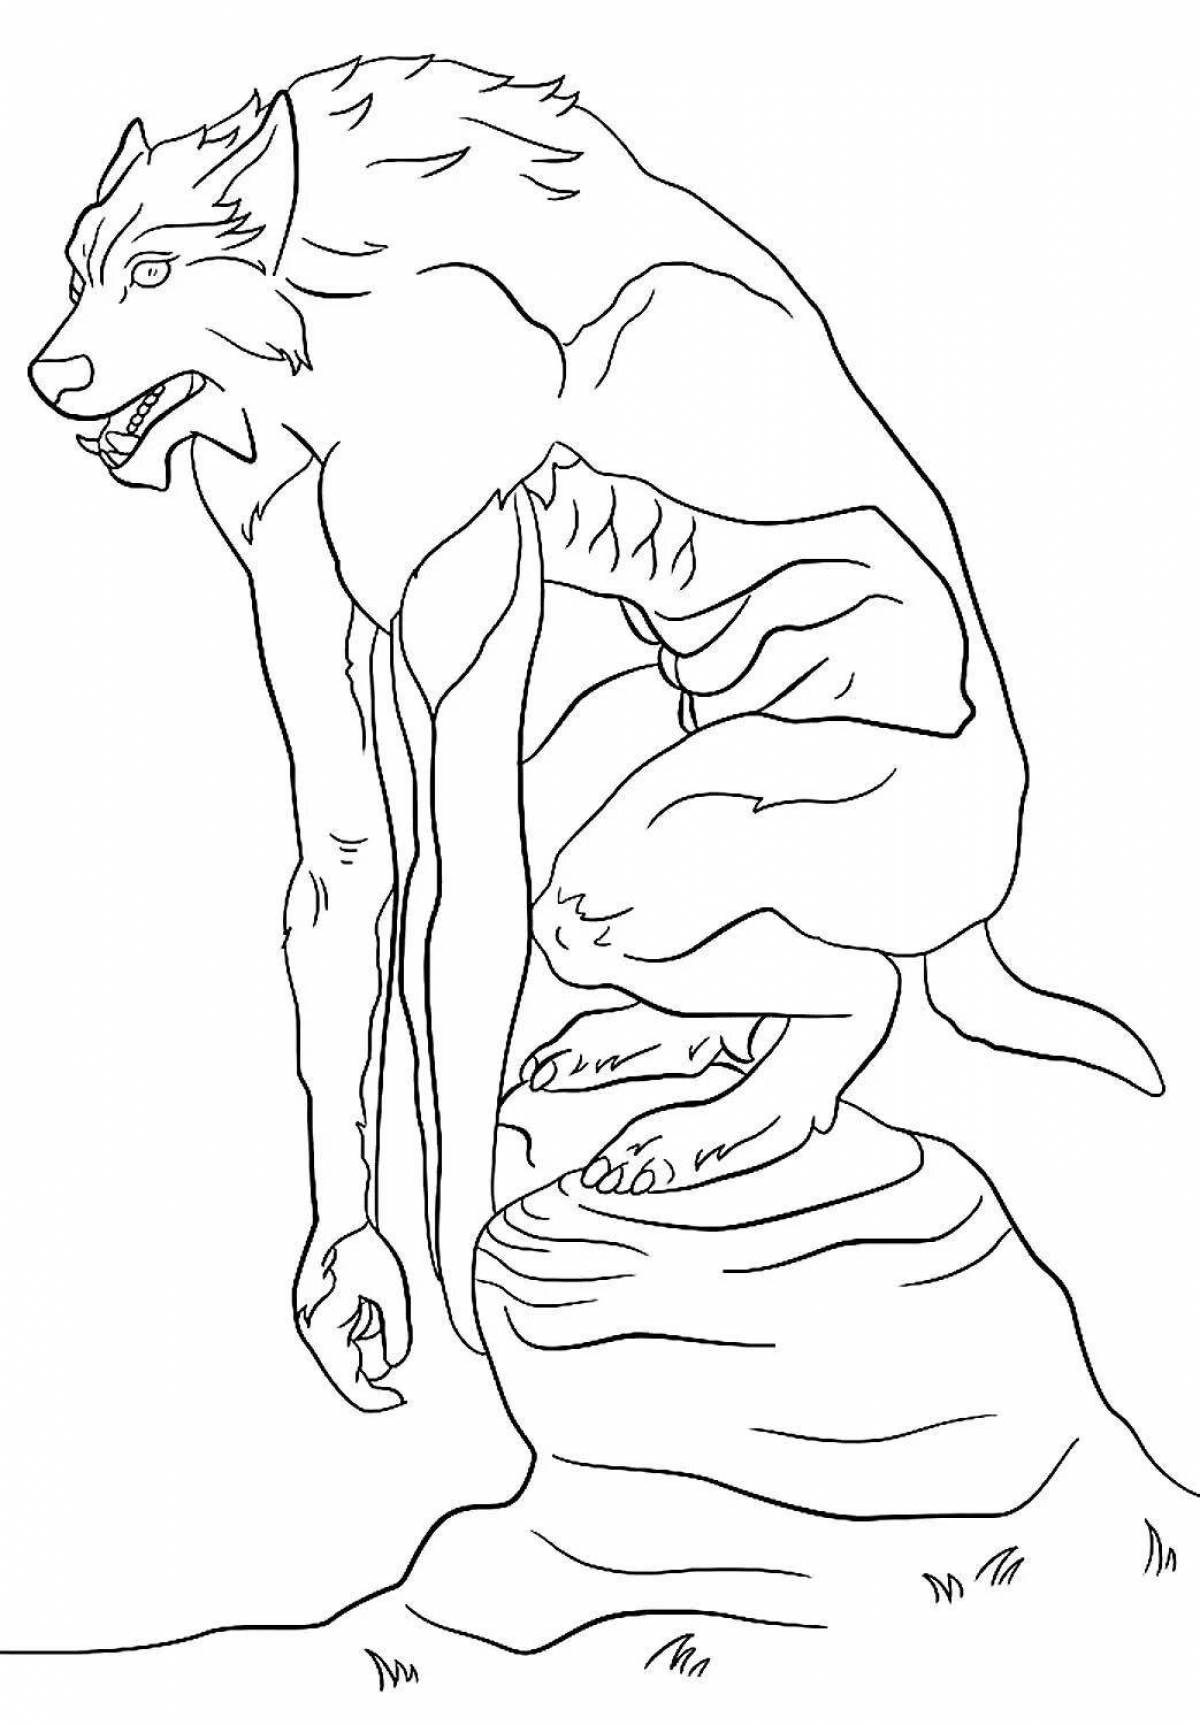 Coloring page mythological werewolf